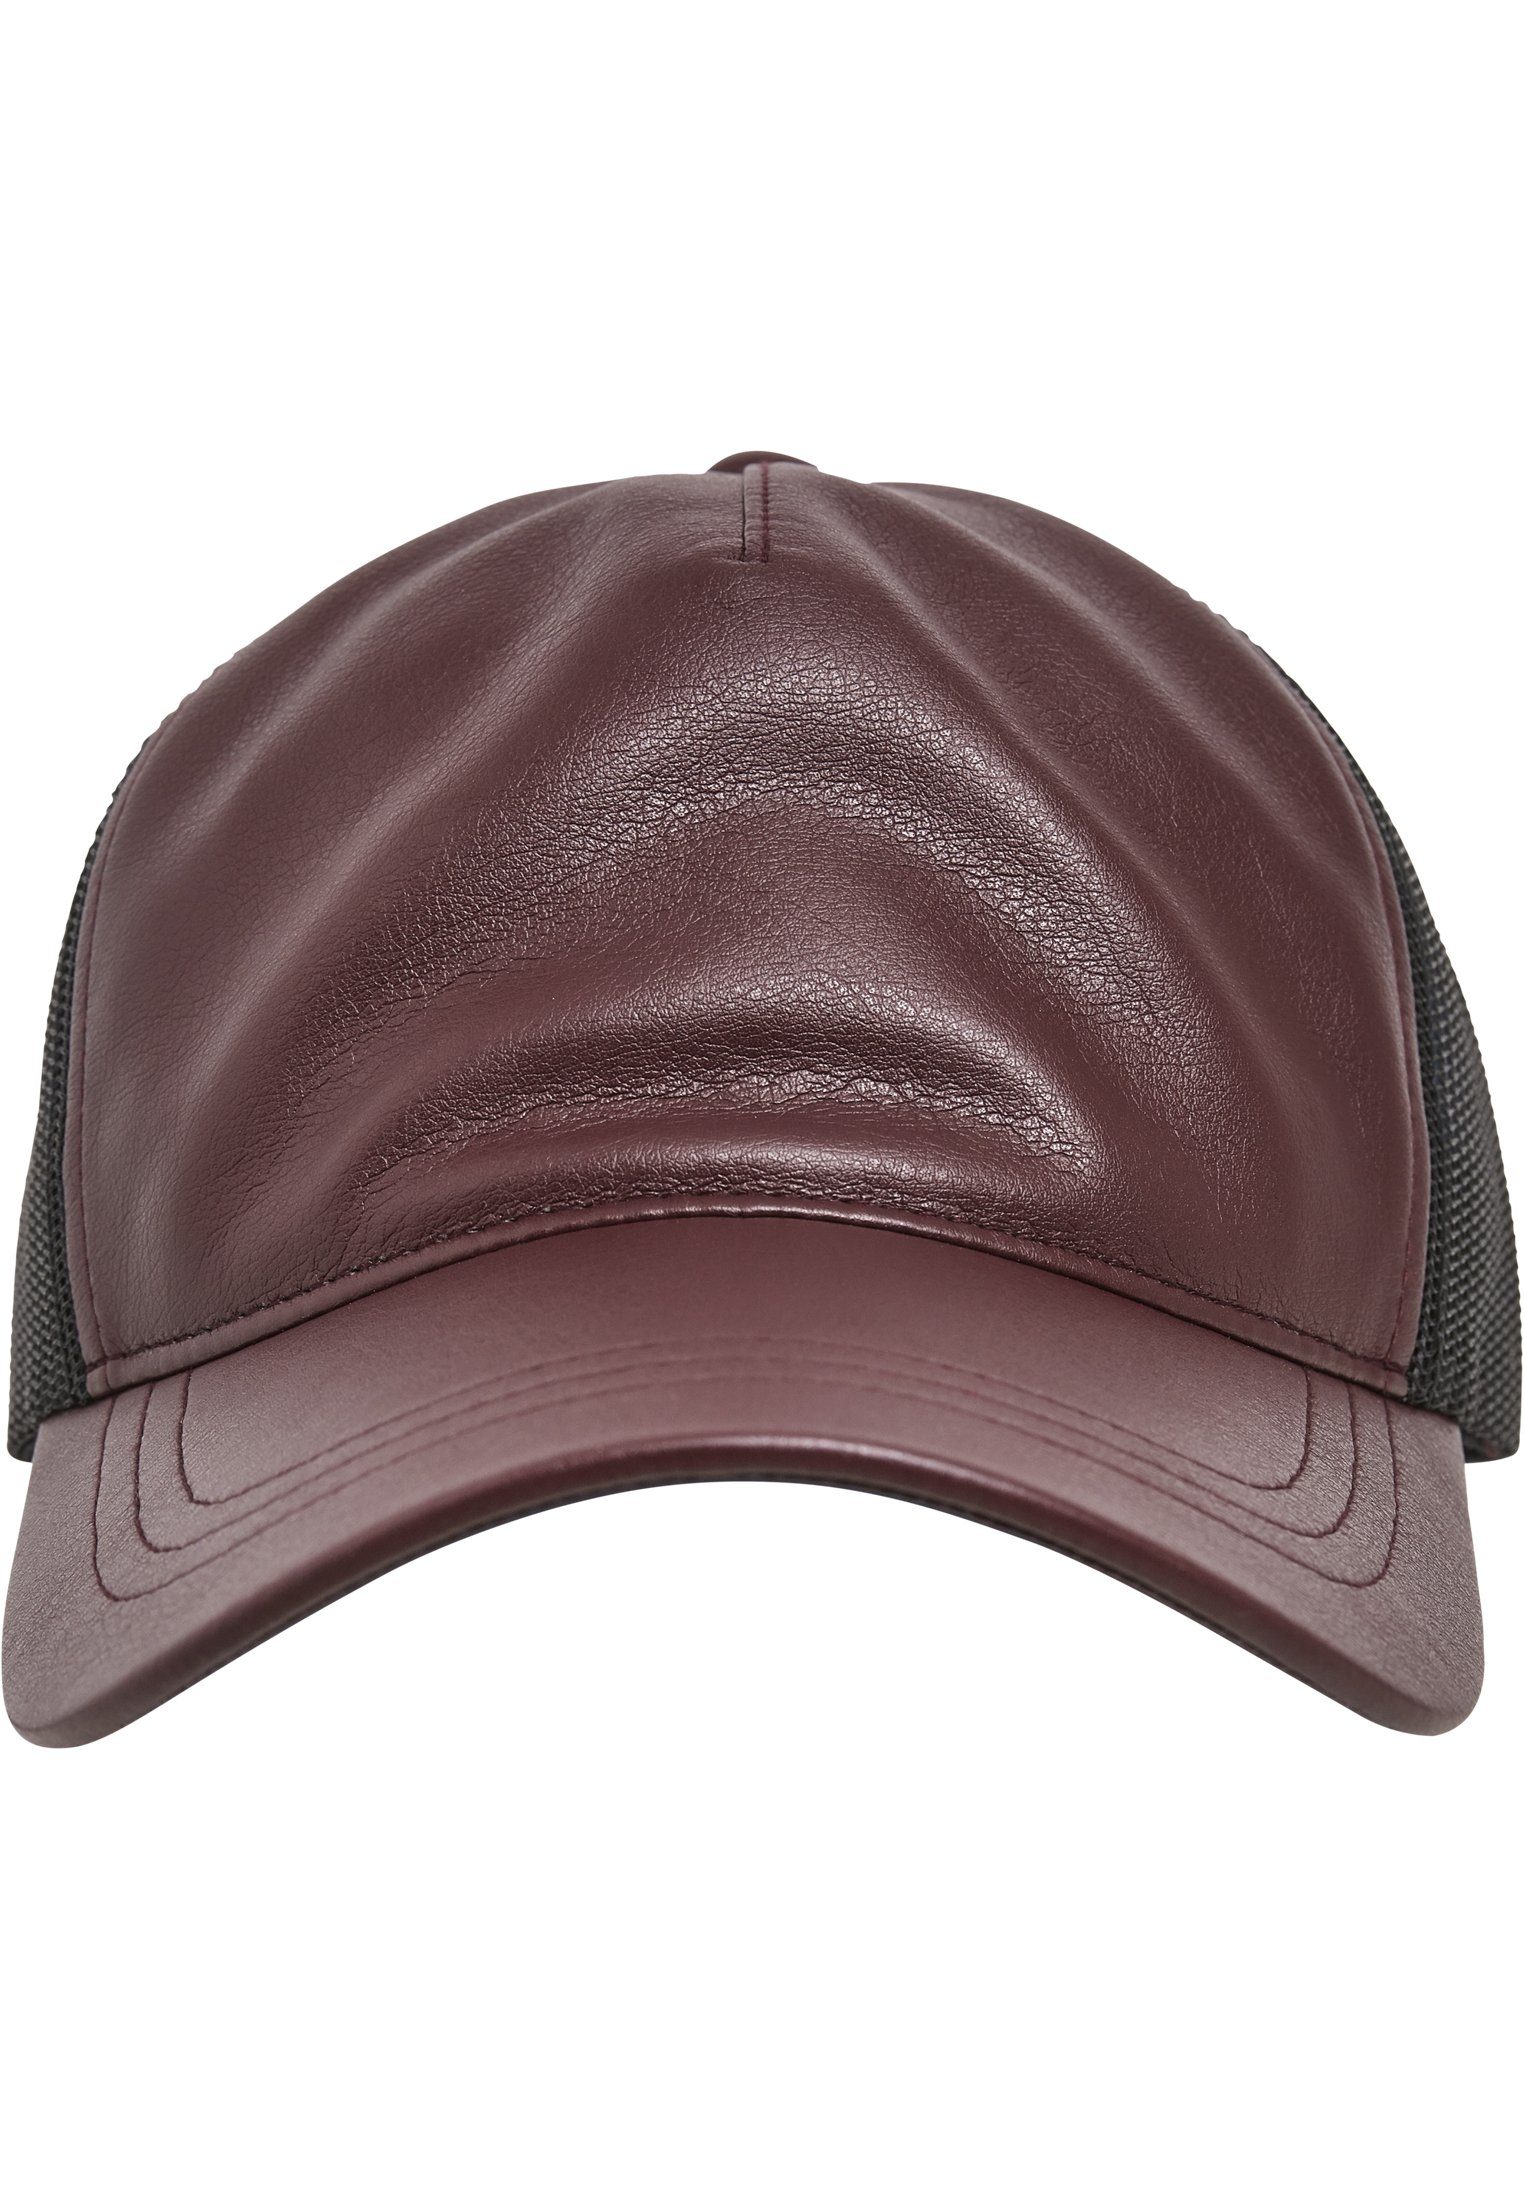 Trucker Flexfit Synthetic Leather maroon/black Cap Flex Trucker